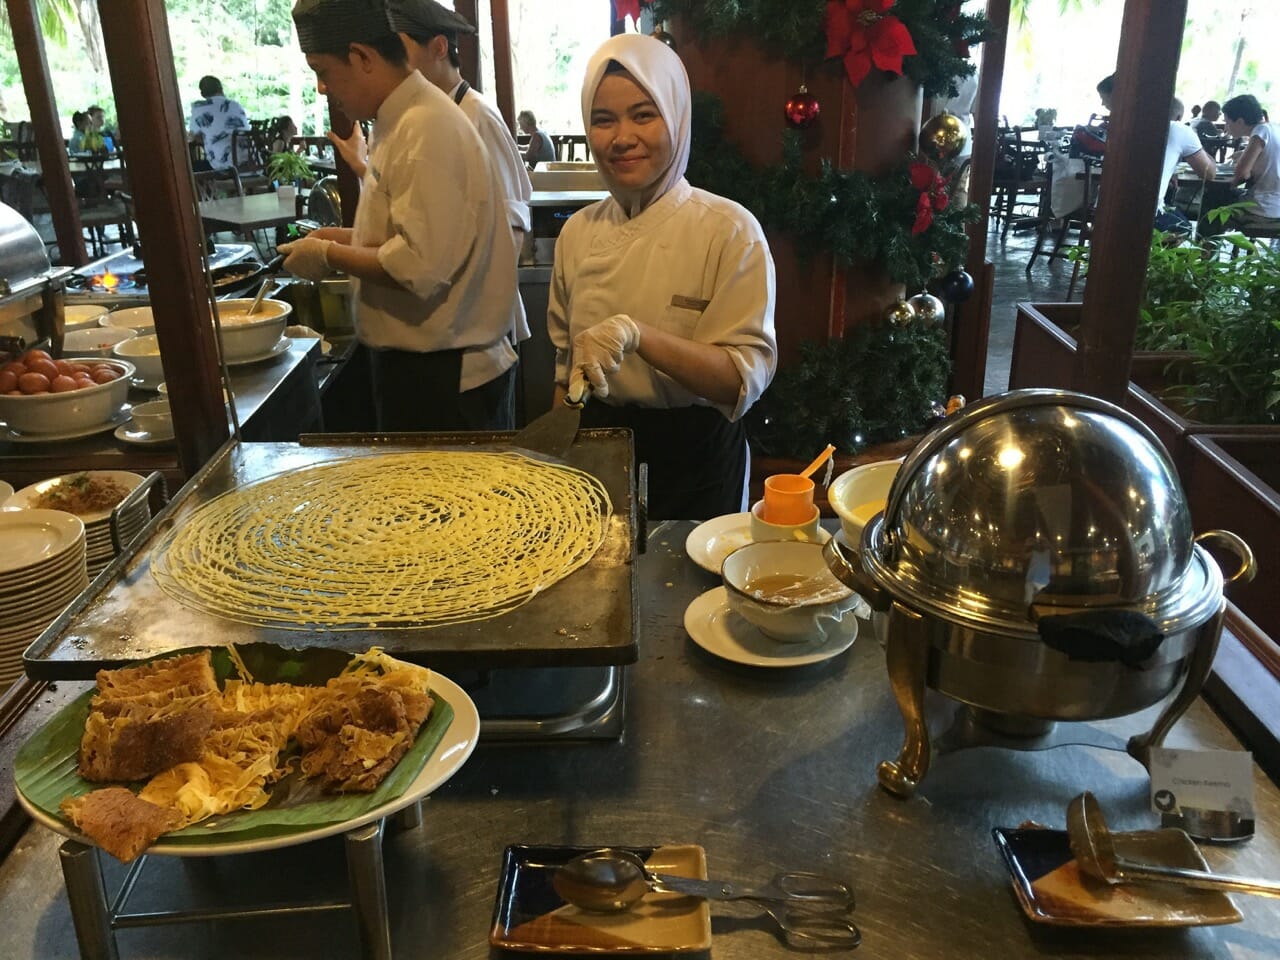 três chefs do Restaurante Dayang Café em um quiosque de preparo de comida usando roupas brancas